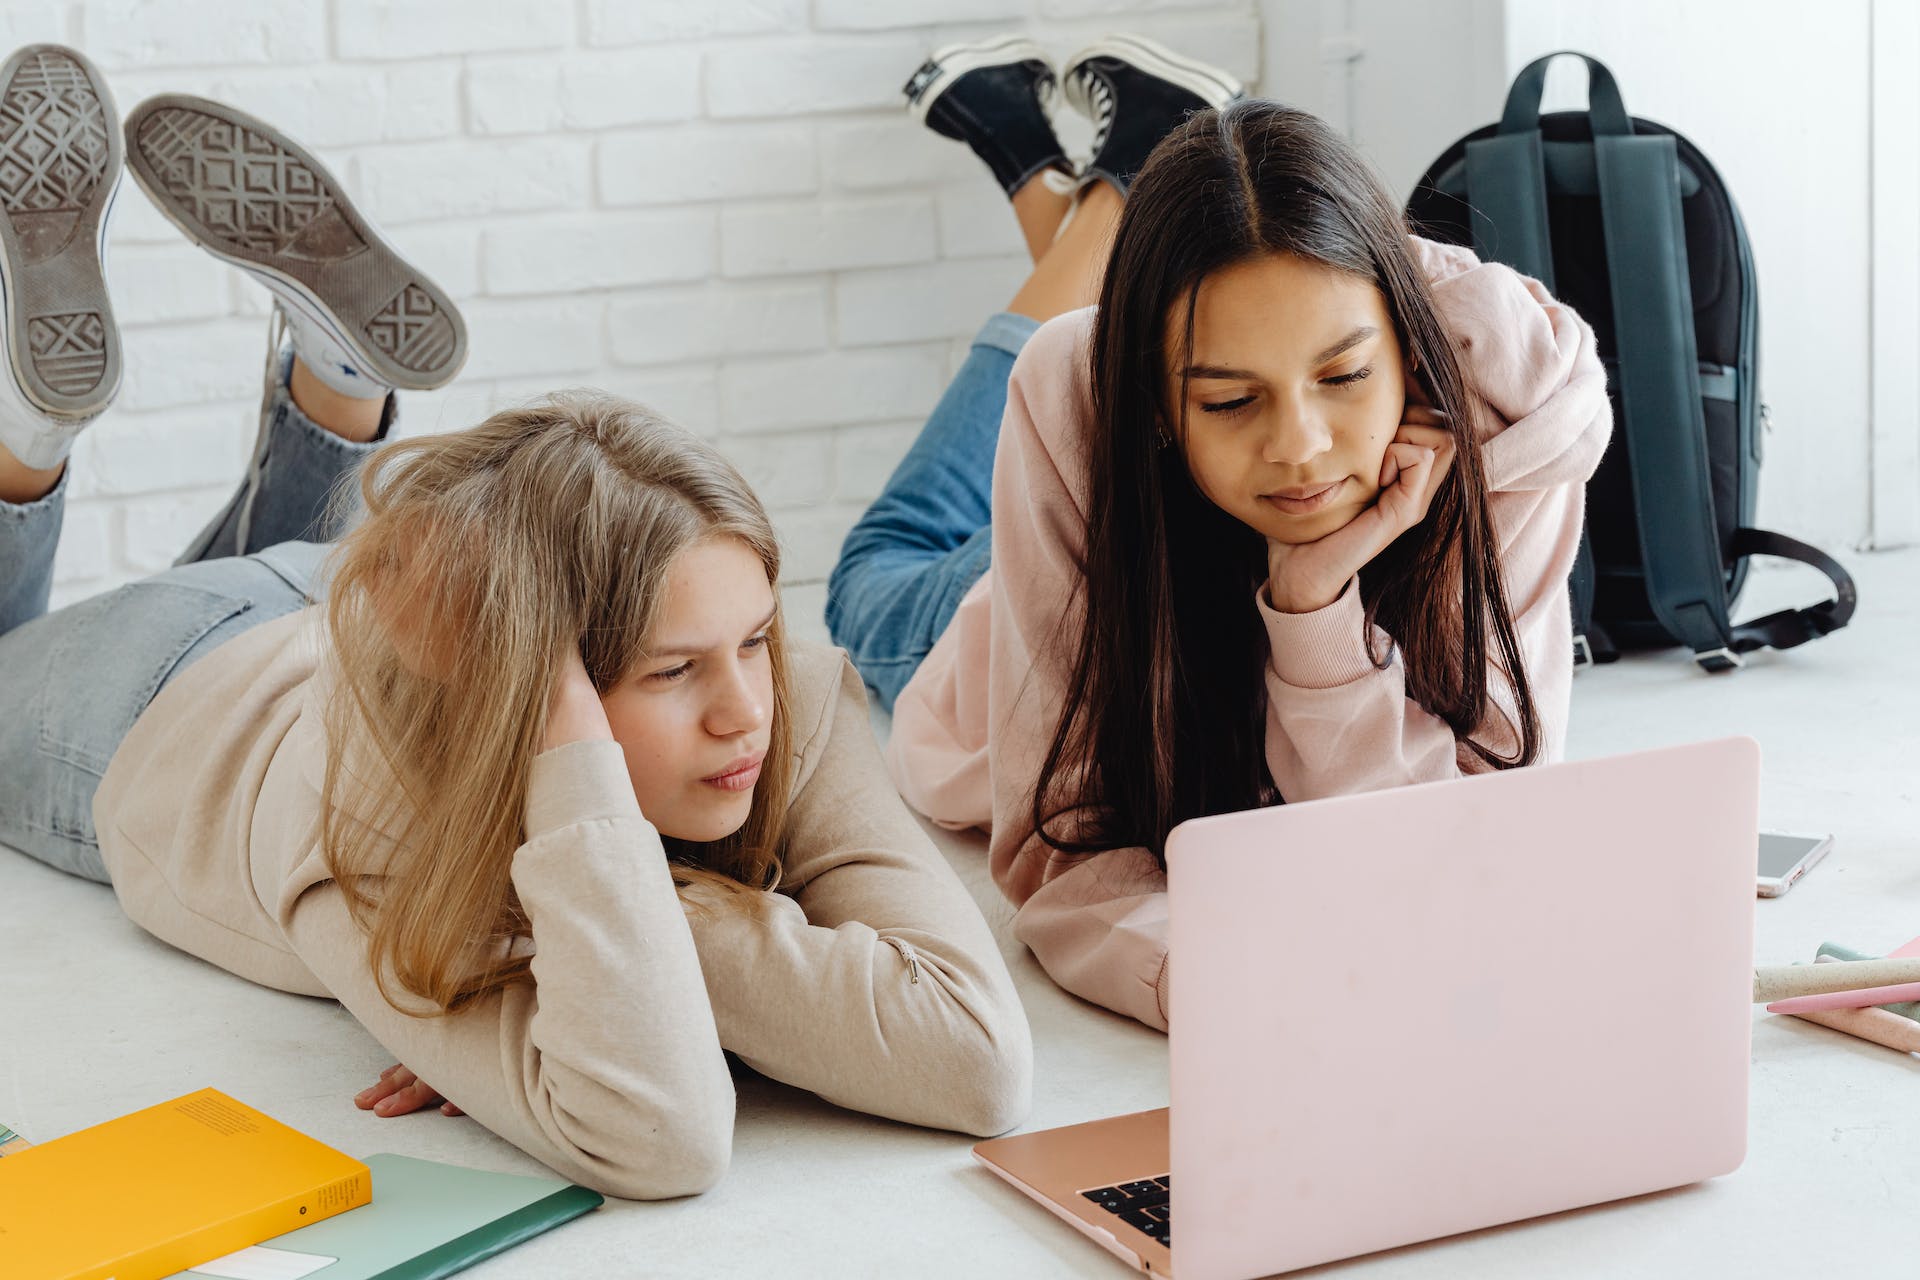 Dos chicas jóvenes utilizando un ordenador portátil | Fuente: Pexels